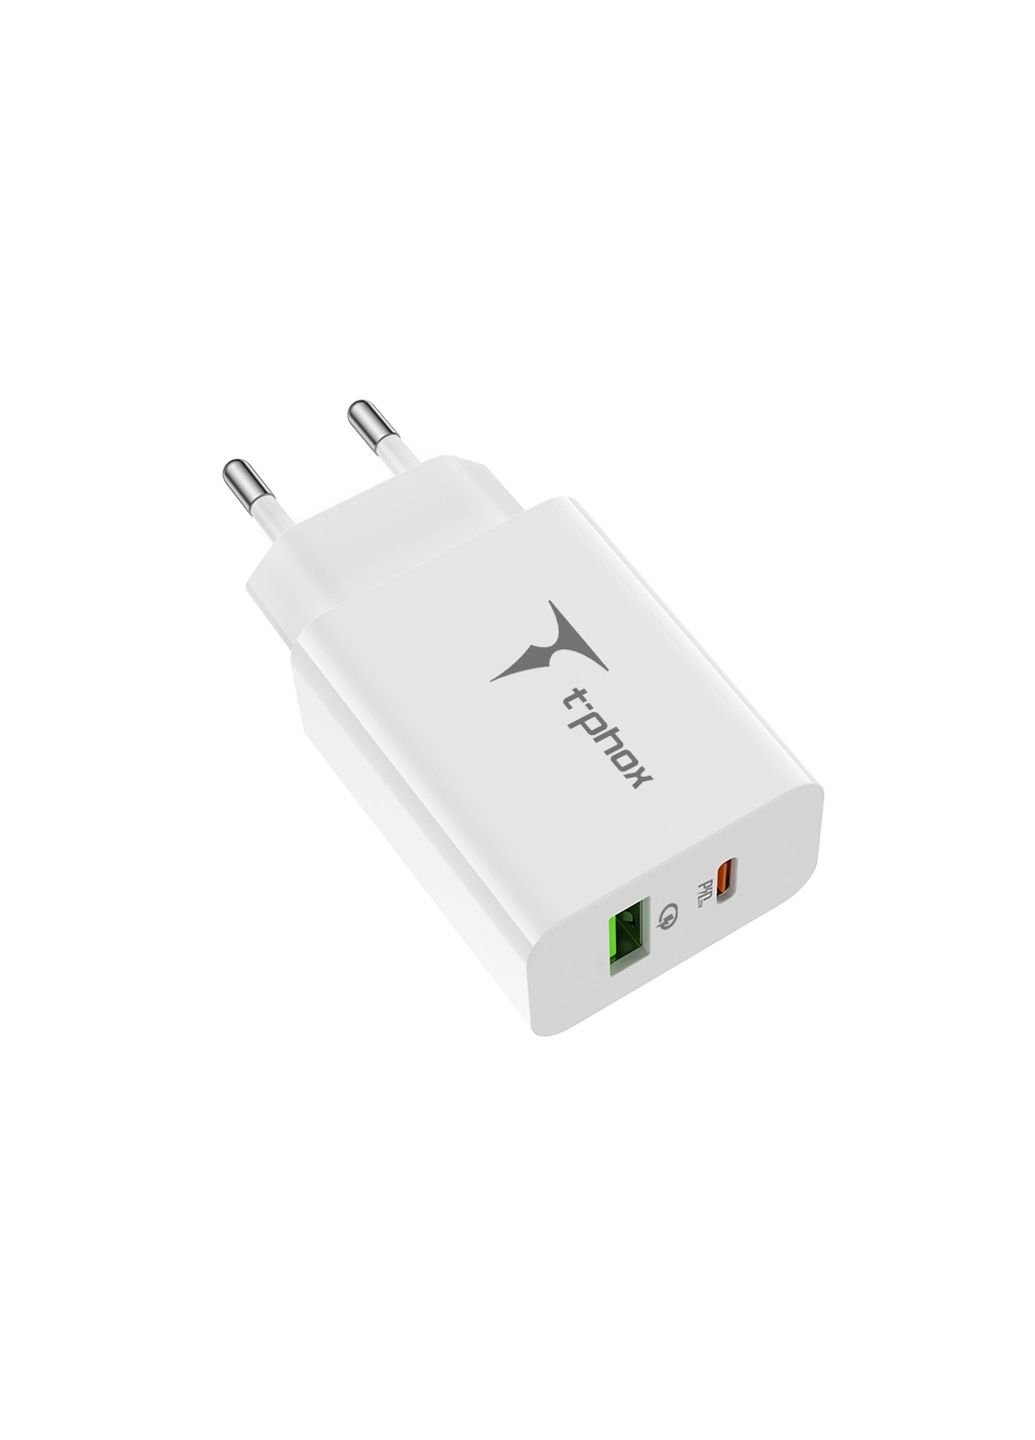 Зарядное устройство (Speedy 20W PD+USB) T-PHOX speedy 20w 2ports type-c+usb charger (white) (253507386)